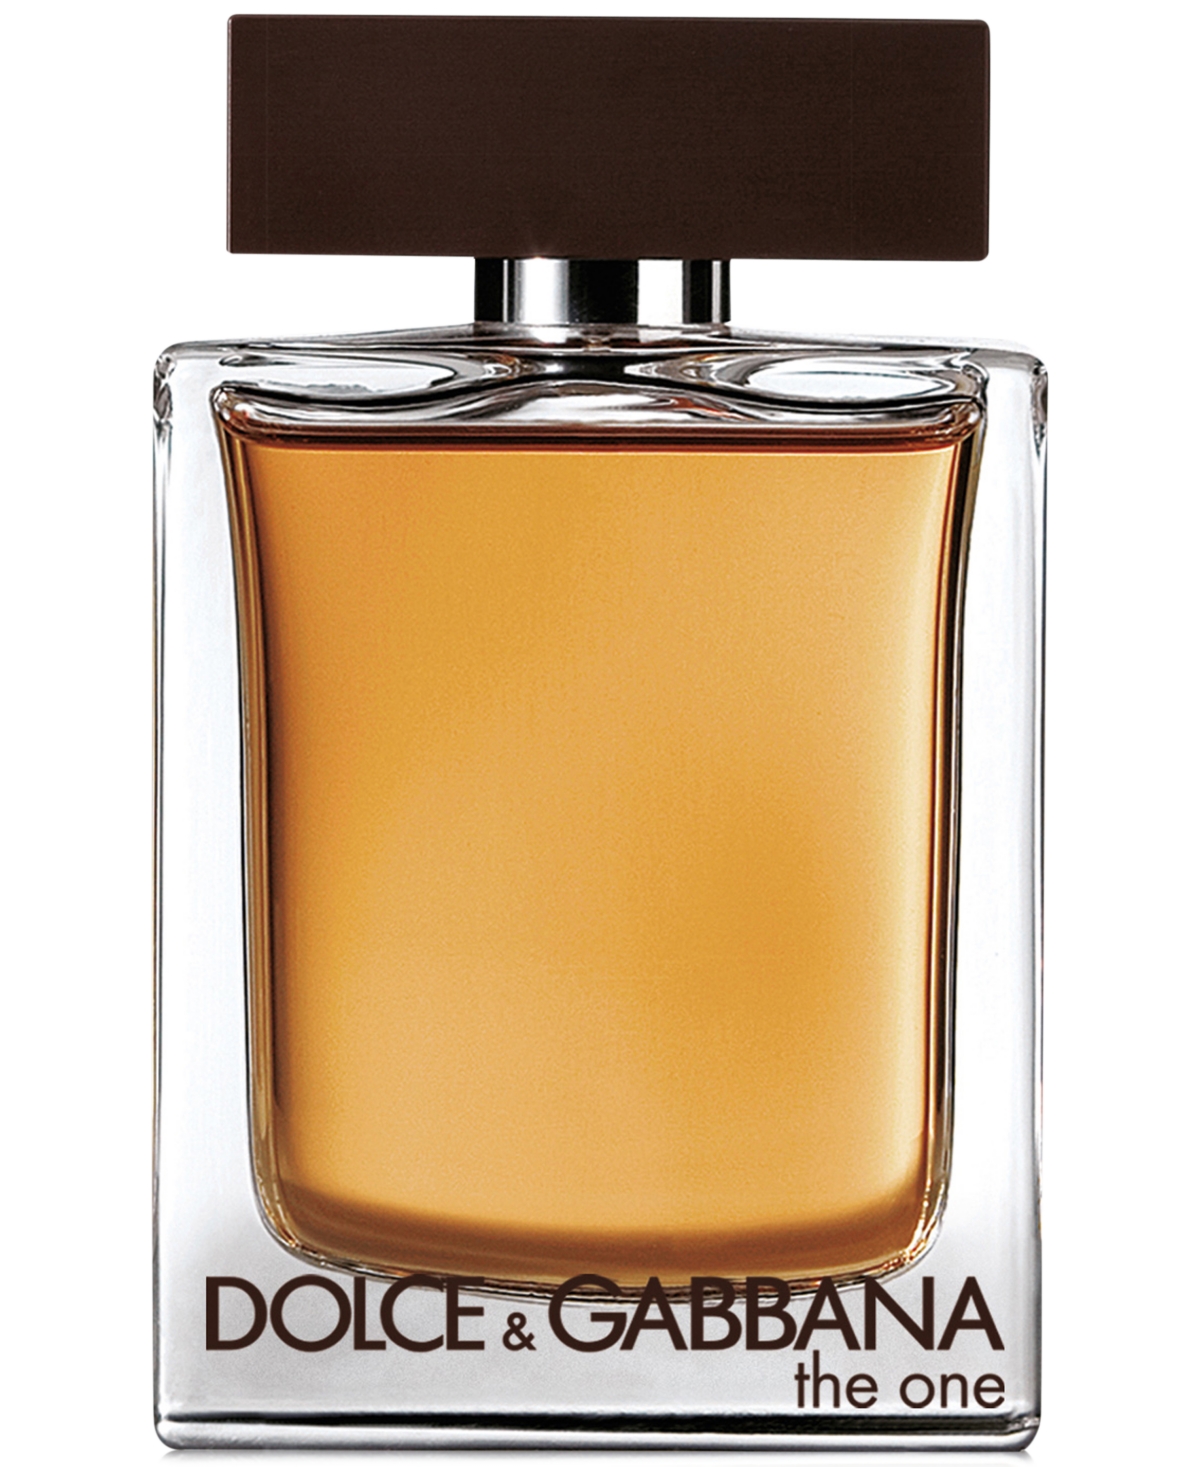 Dolce&Gabbana Men's The One Eau de Toilette Spray, 5.0 oz.